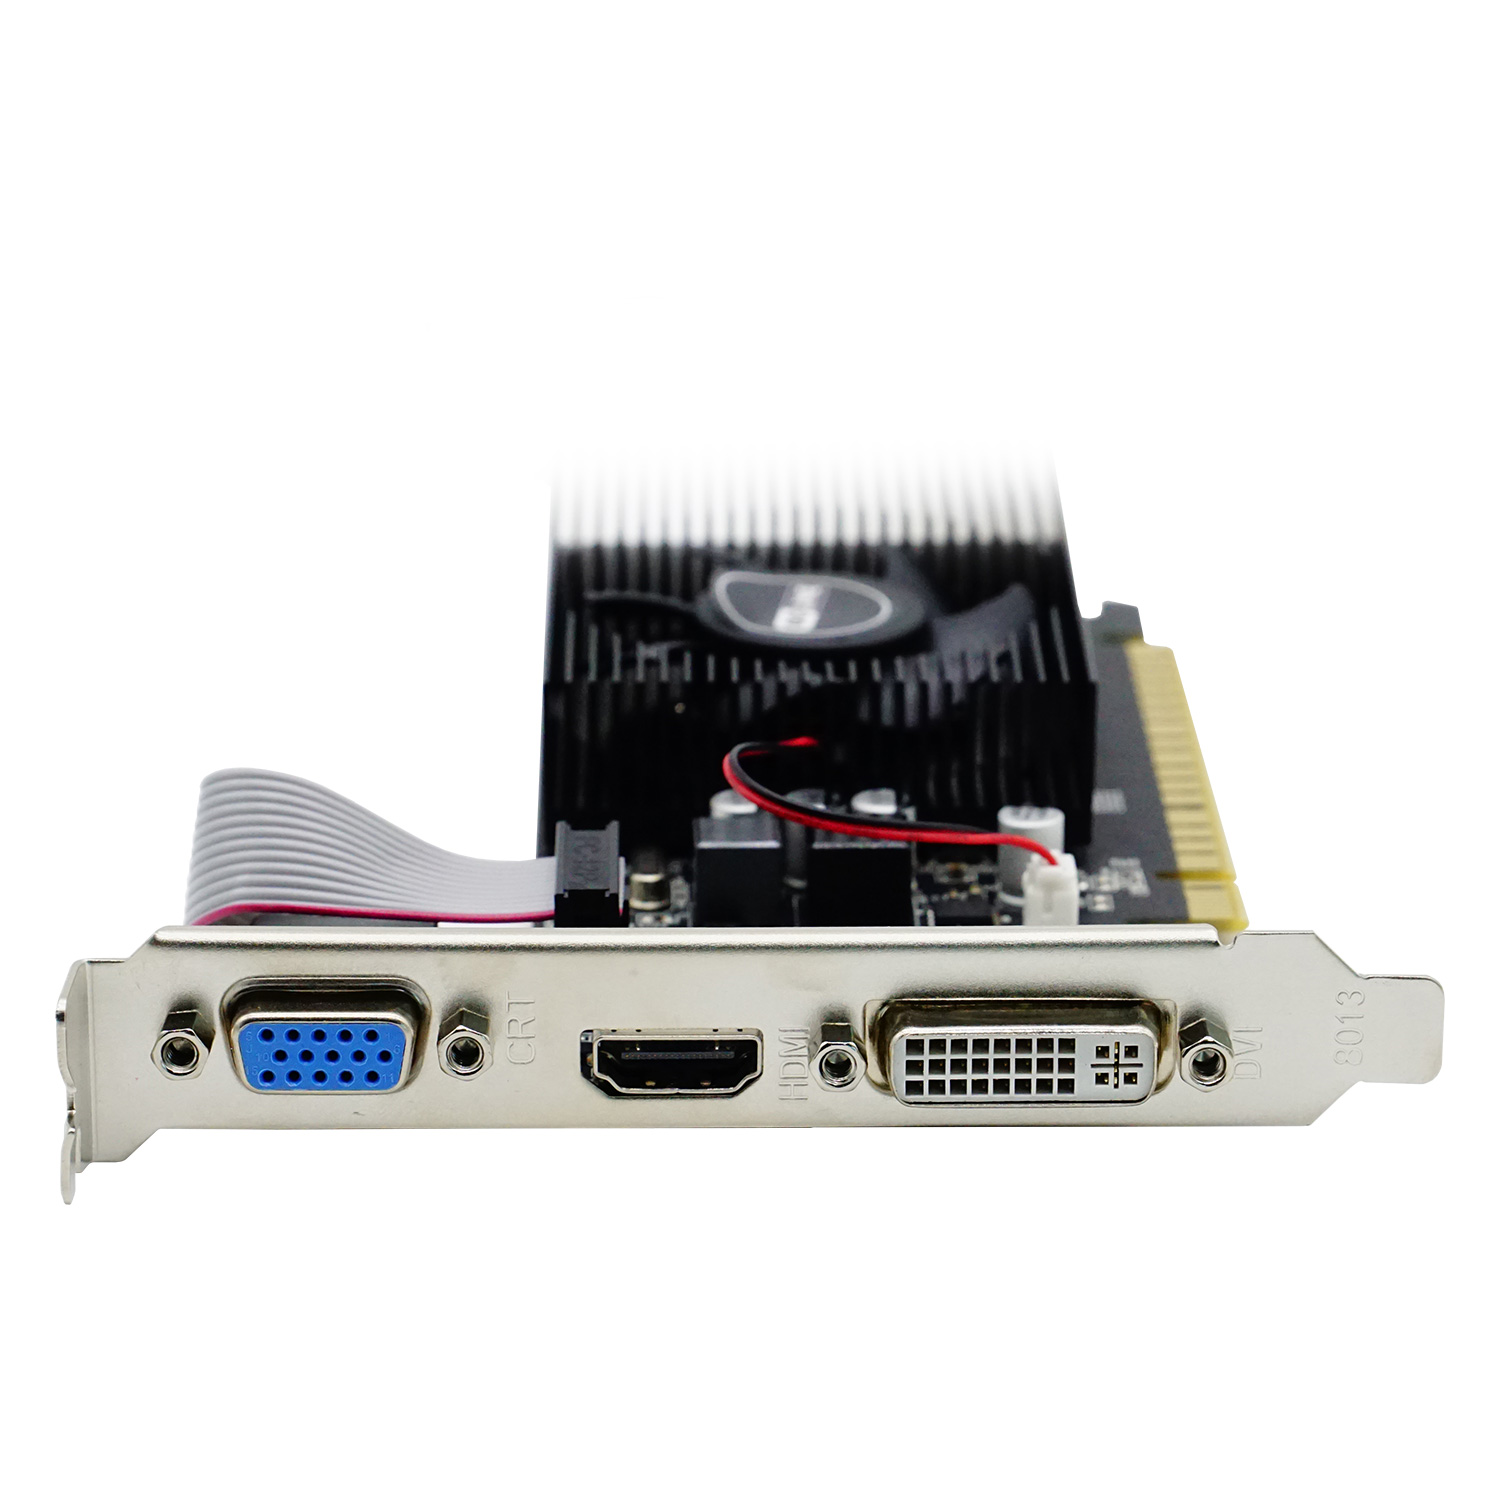 Placa de Vídeo Goline NVIDIA GeForce GT 730 4GB DDR3 - GL-GT730-4GB-D3 (1 Ano de Garantia)